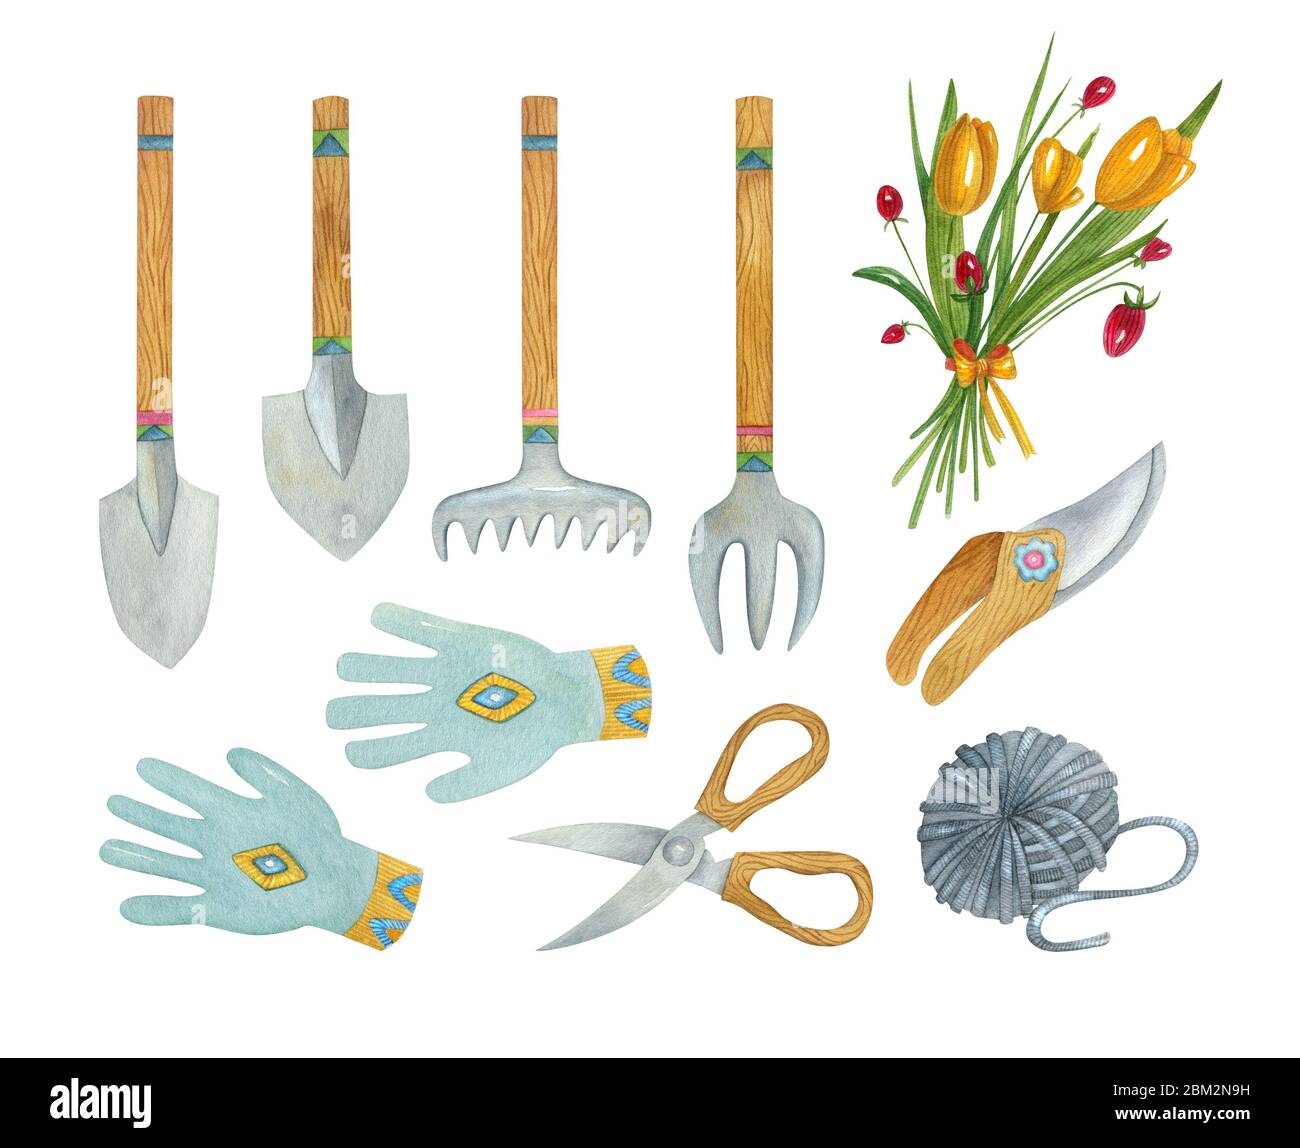 Acquerello giardinaggio set di strumenti. Illustrazione dipinta a mano di pala, rastrello, guanti, forchetta, secateurs, forbici, palla di filo. Foto Stock